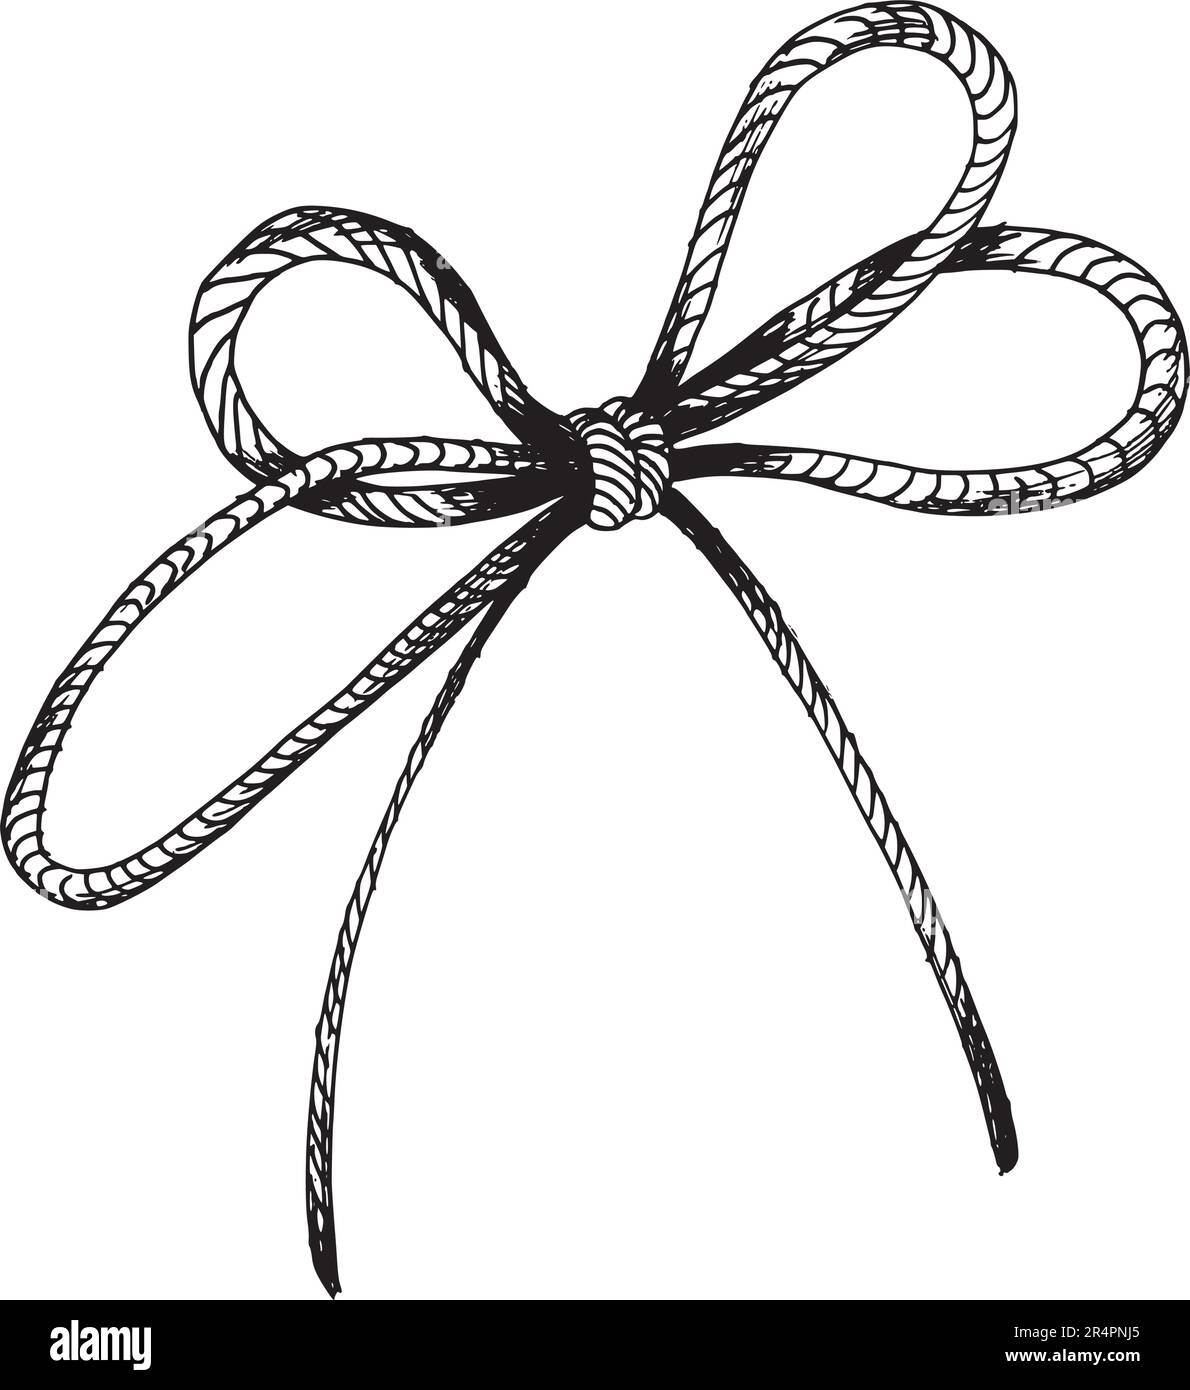 Juteseil, handgezeichnete Illustration in schwarzer Tinte, Grafik.  EPS-Vektor. Isoliertes Objekt auf weißem Hintergrund Stock-Vektorgrafik -  Alamy